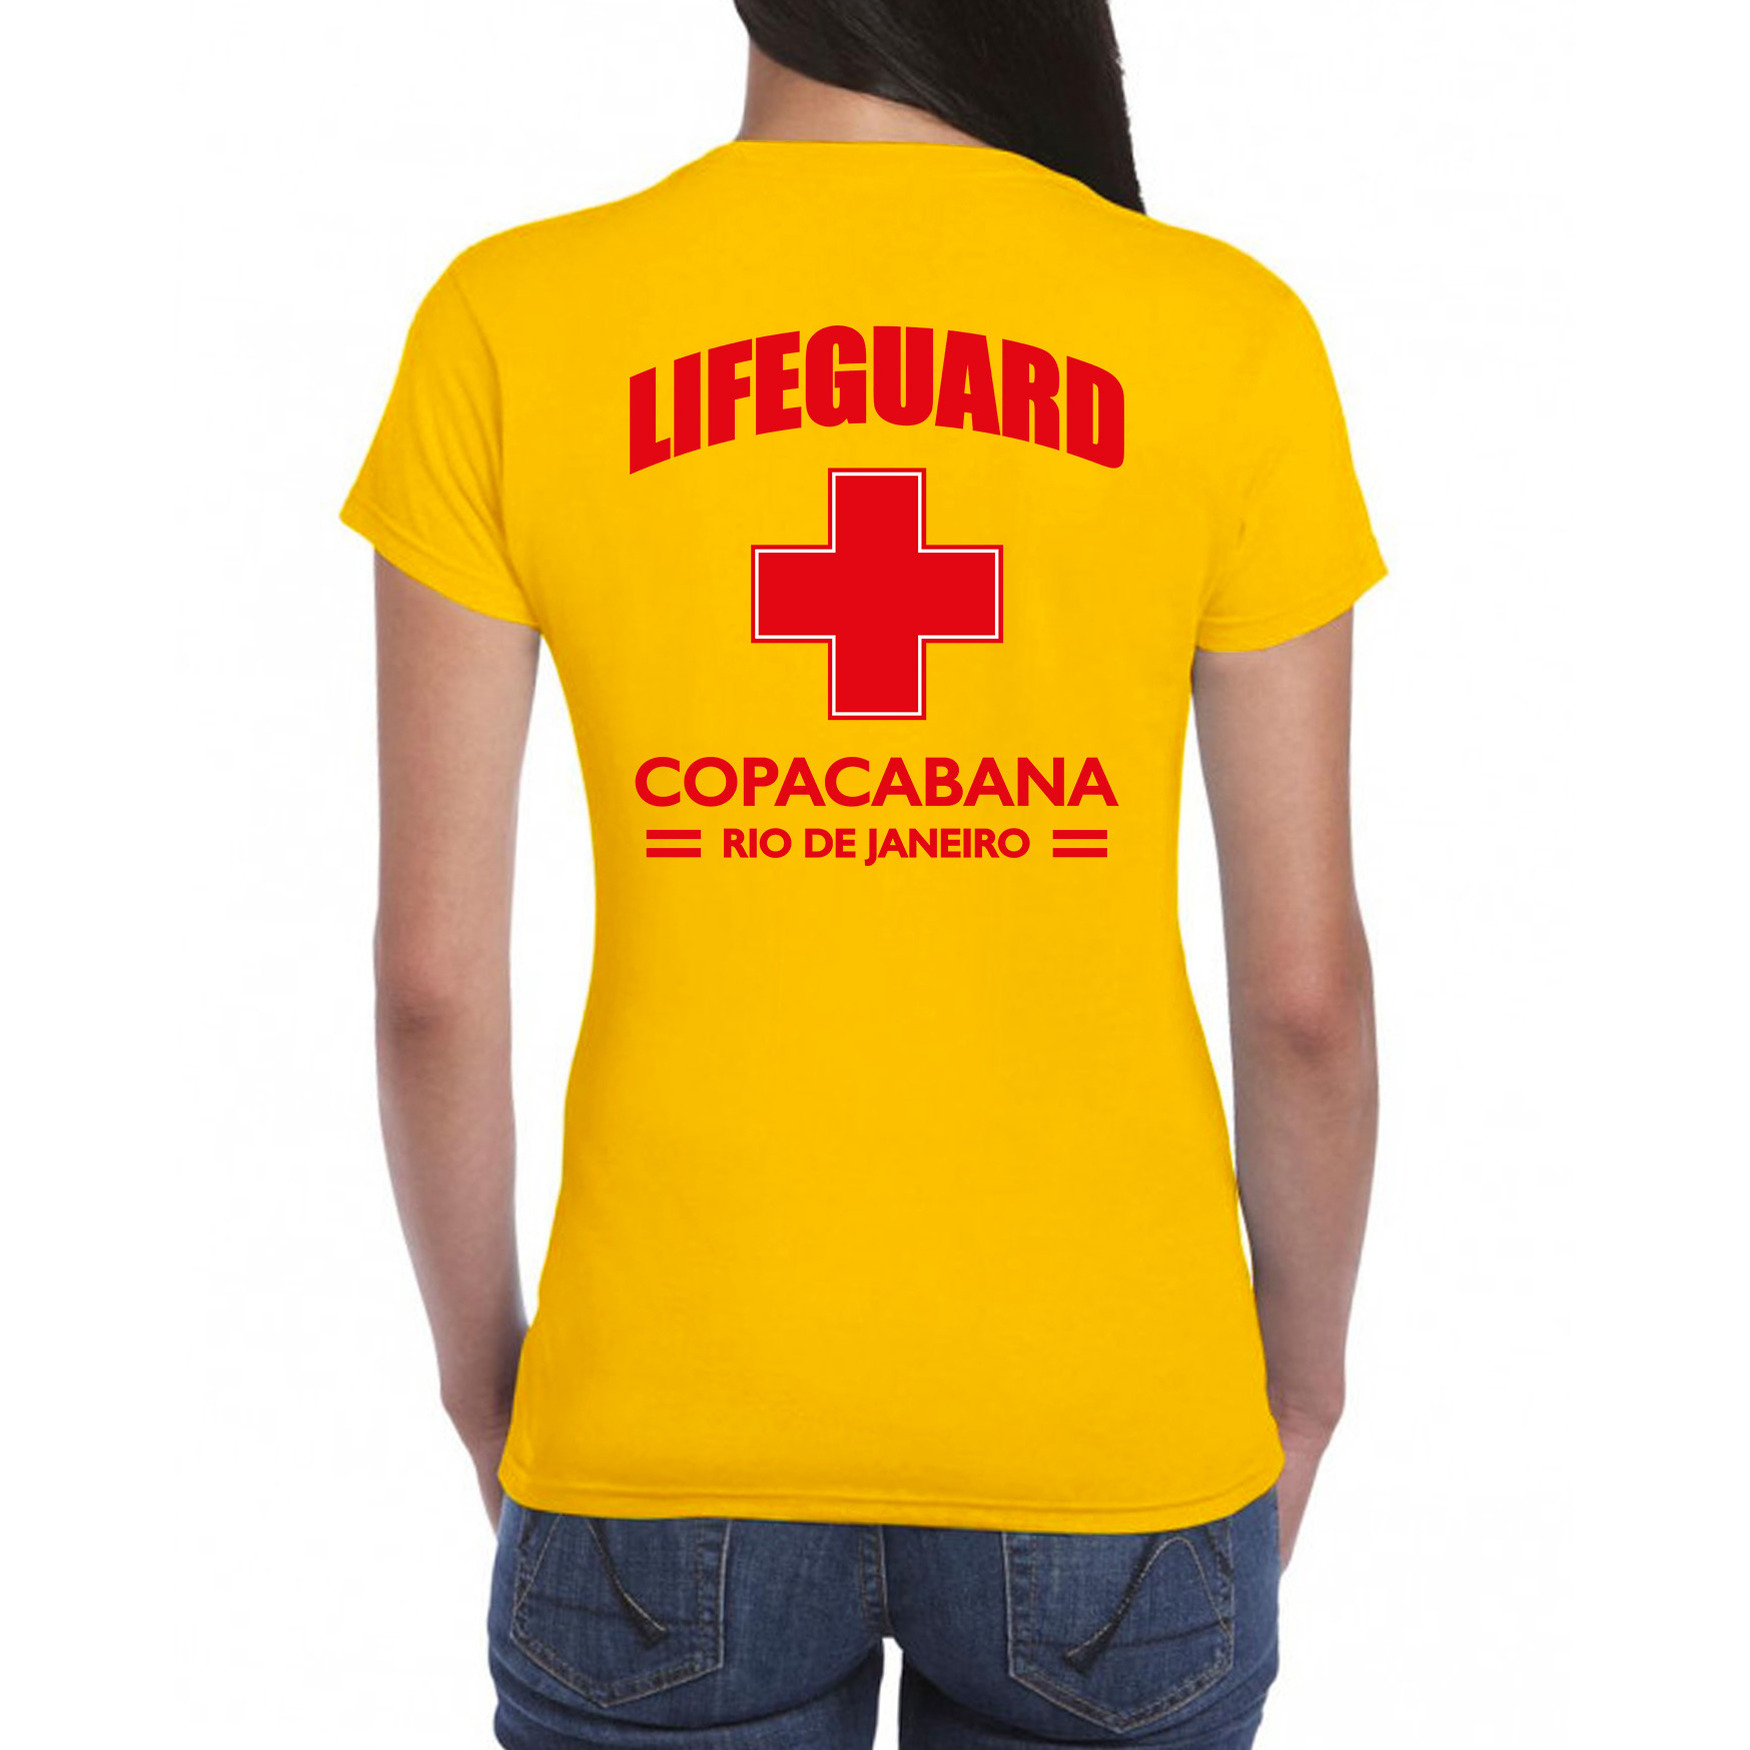 Lifeguard/ strandwacht verkleed t-shirt - shirt Lifeguard Copacabana Rio De Janeiro geel voor dames